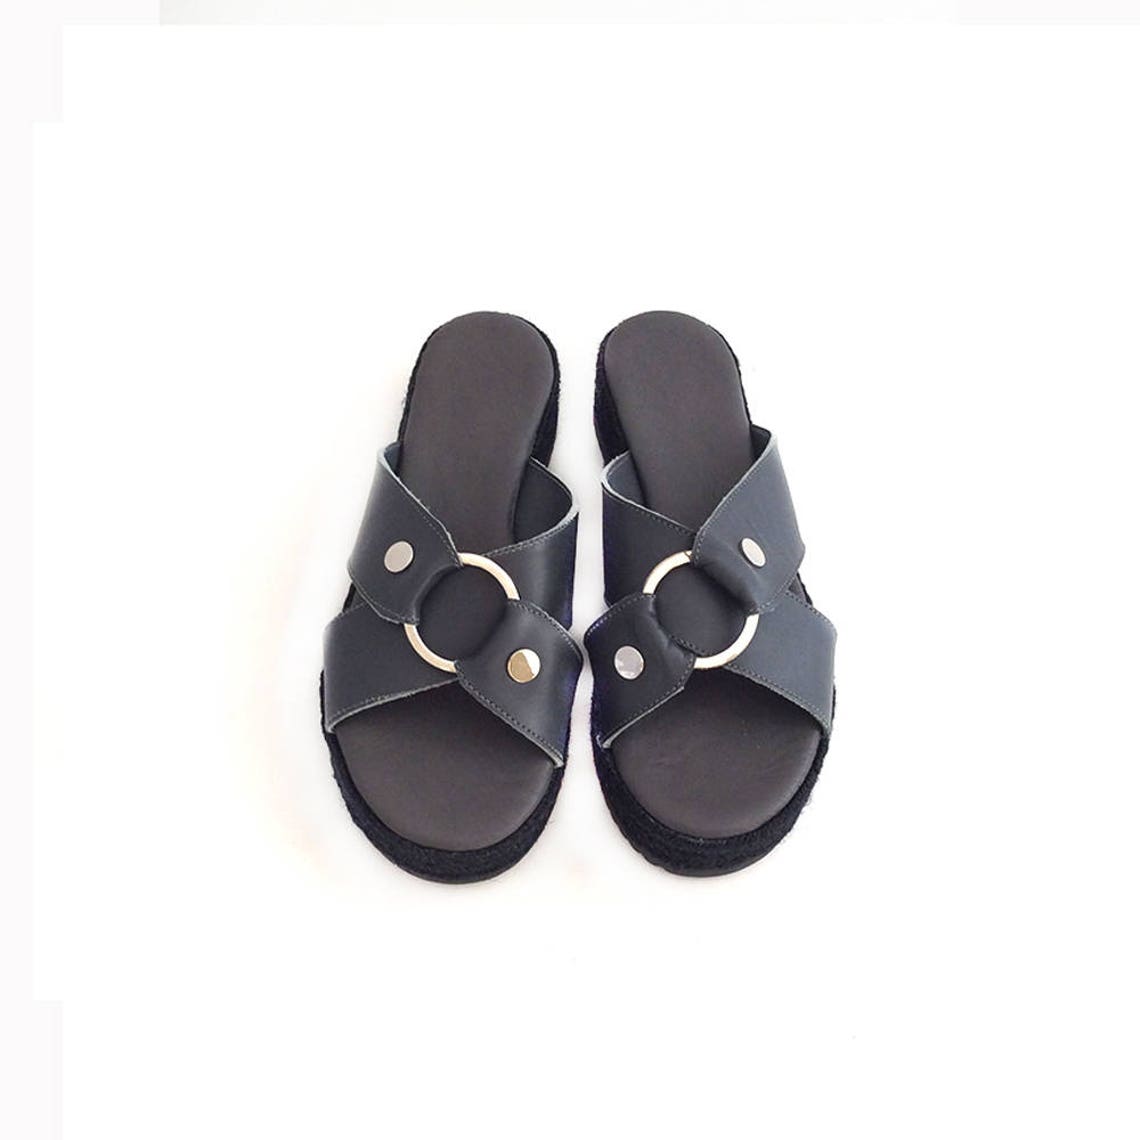 Espadrilles Sandals Grey Leather Sandals Flatform - Etsy